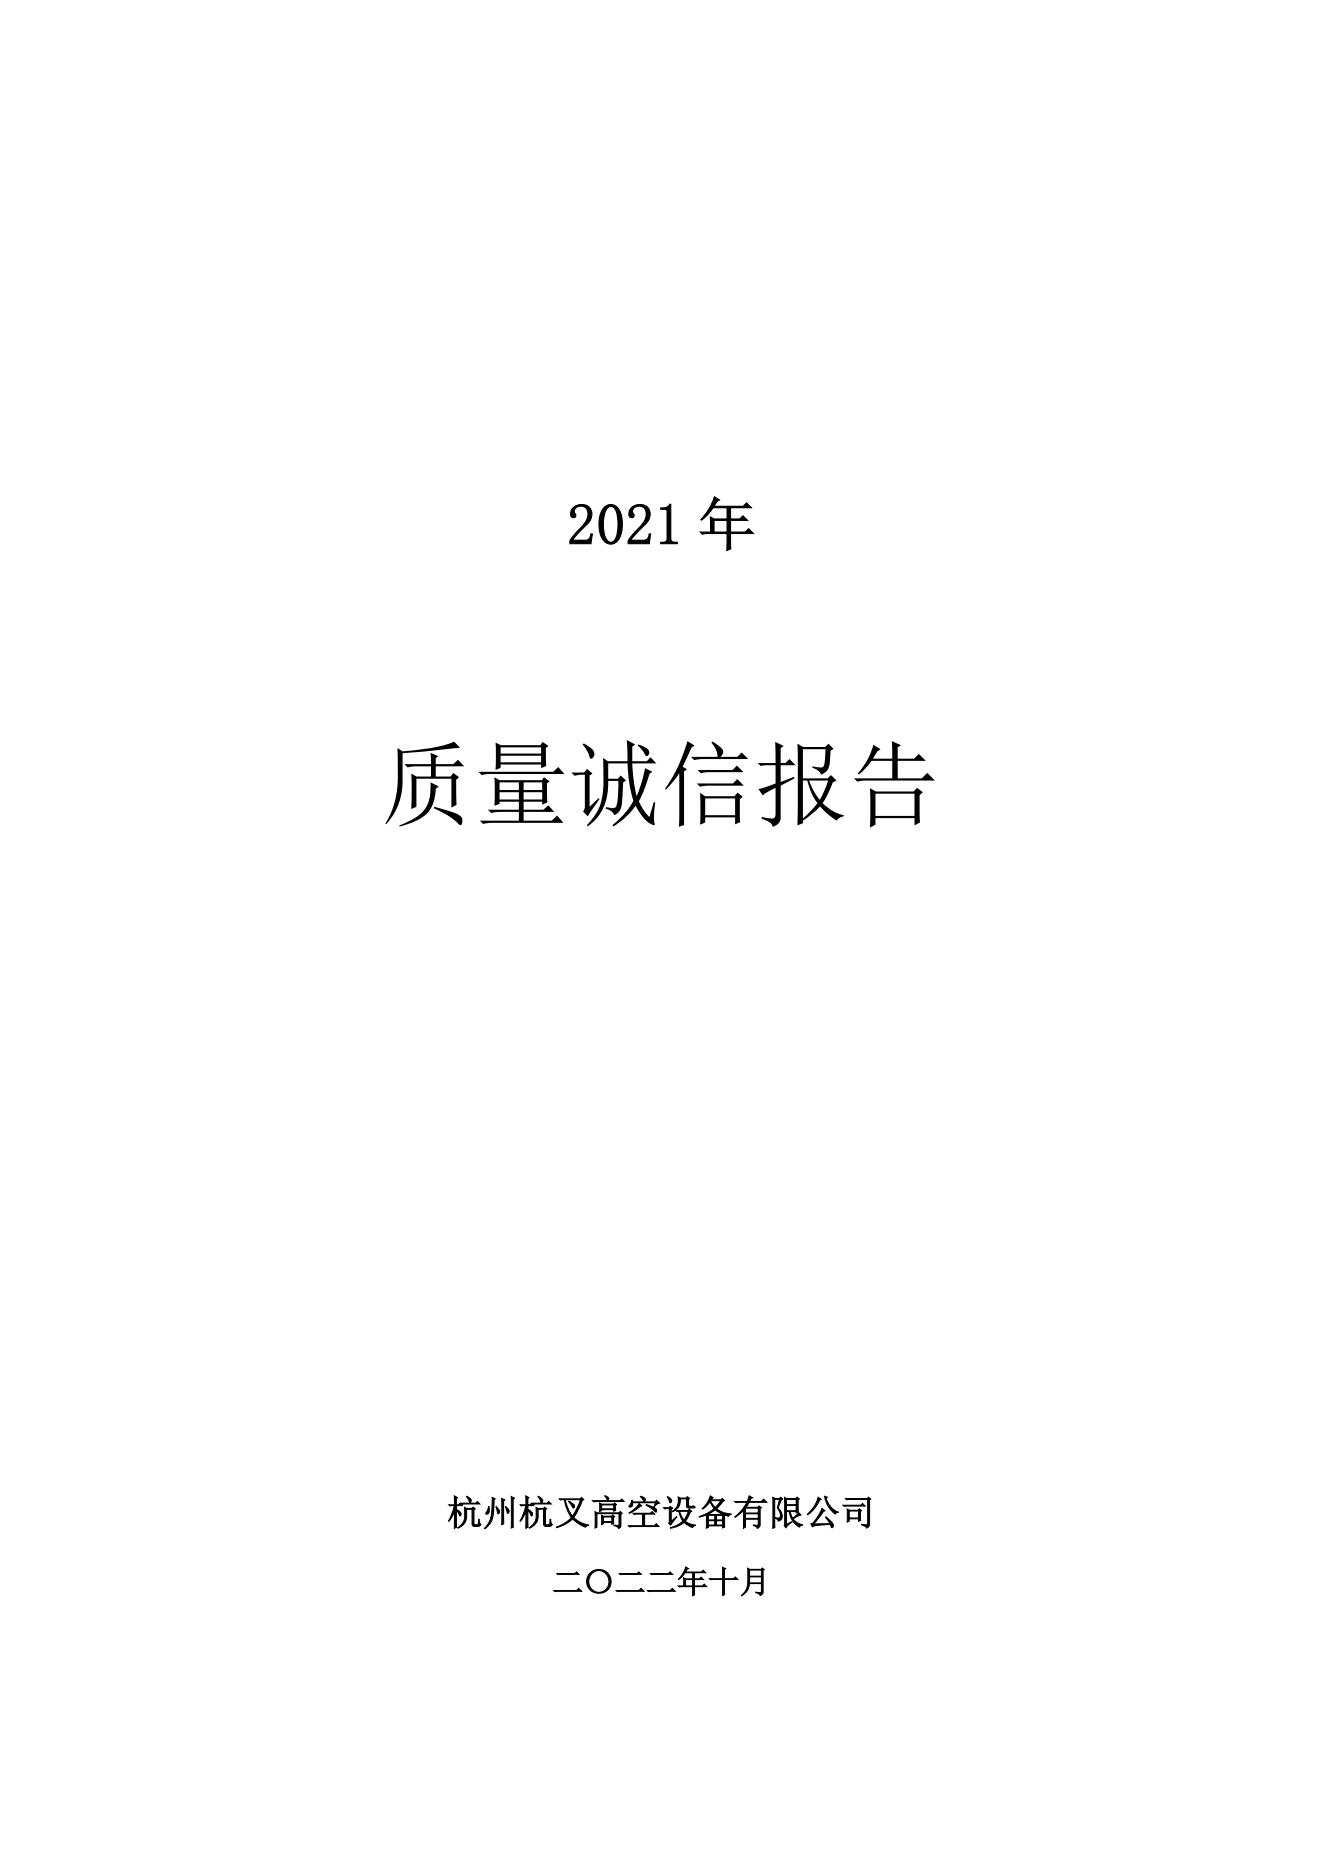 杭州杭叉高空设备公司2021年质量诚信报告(图1)